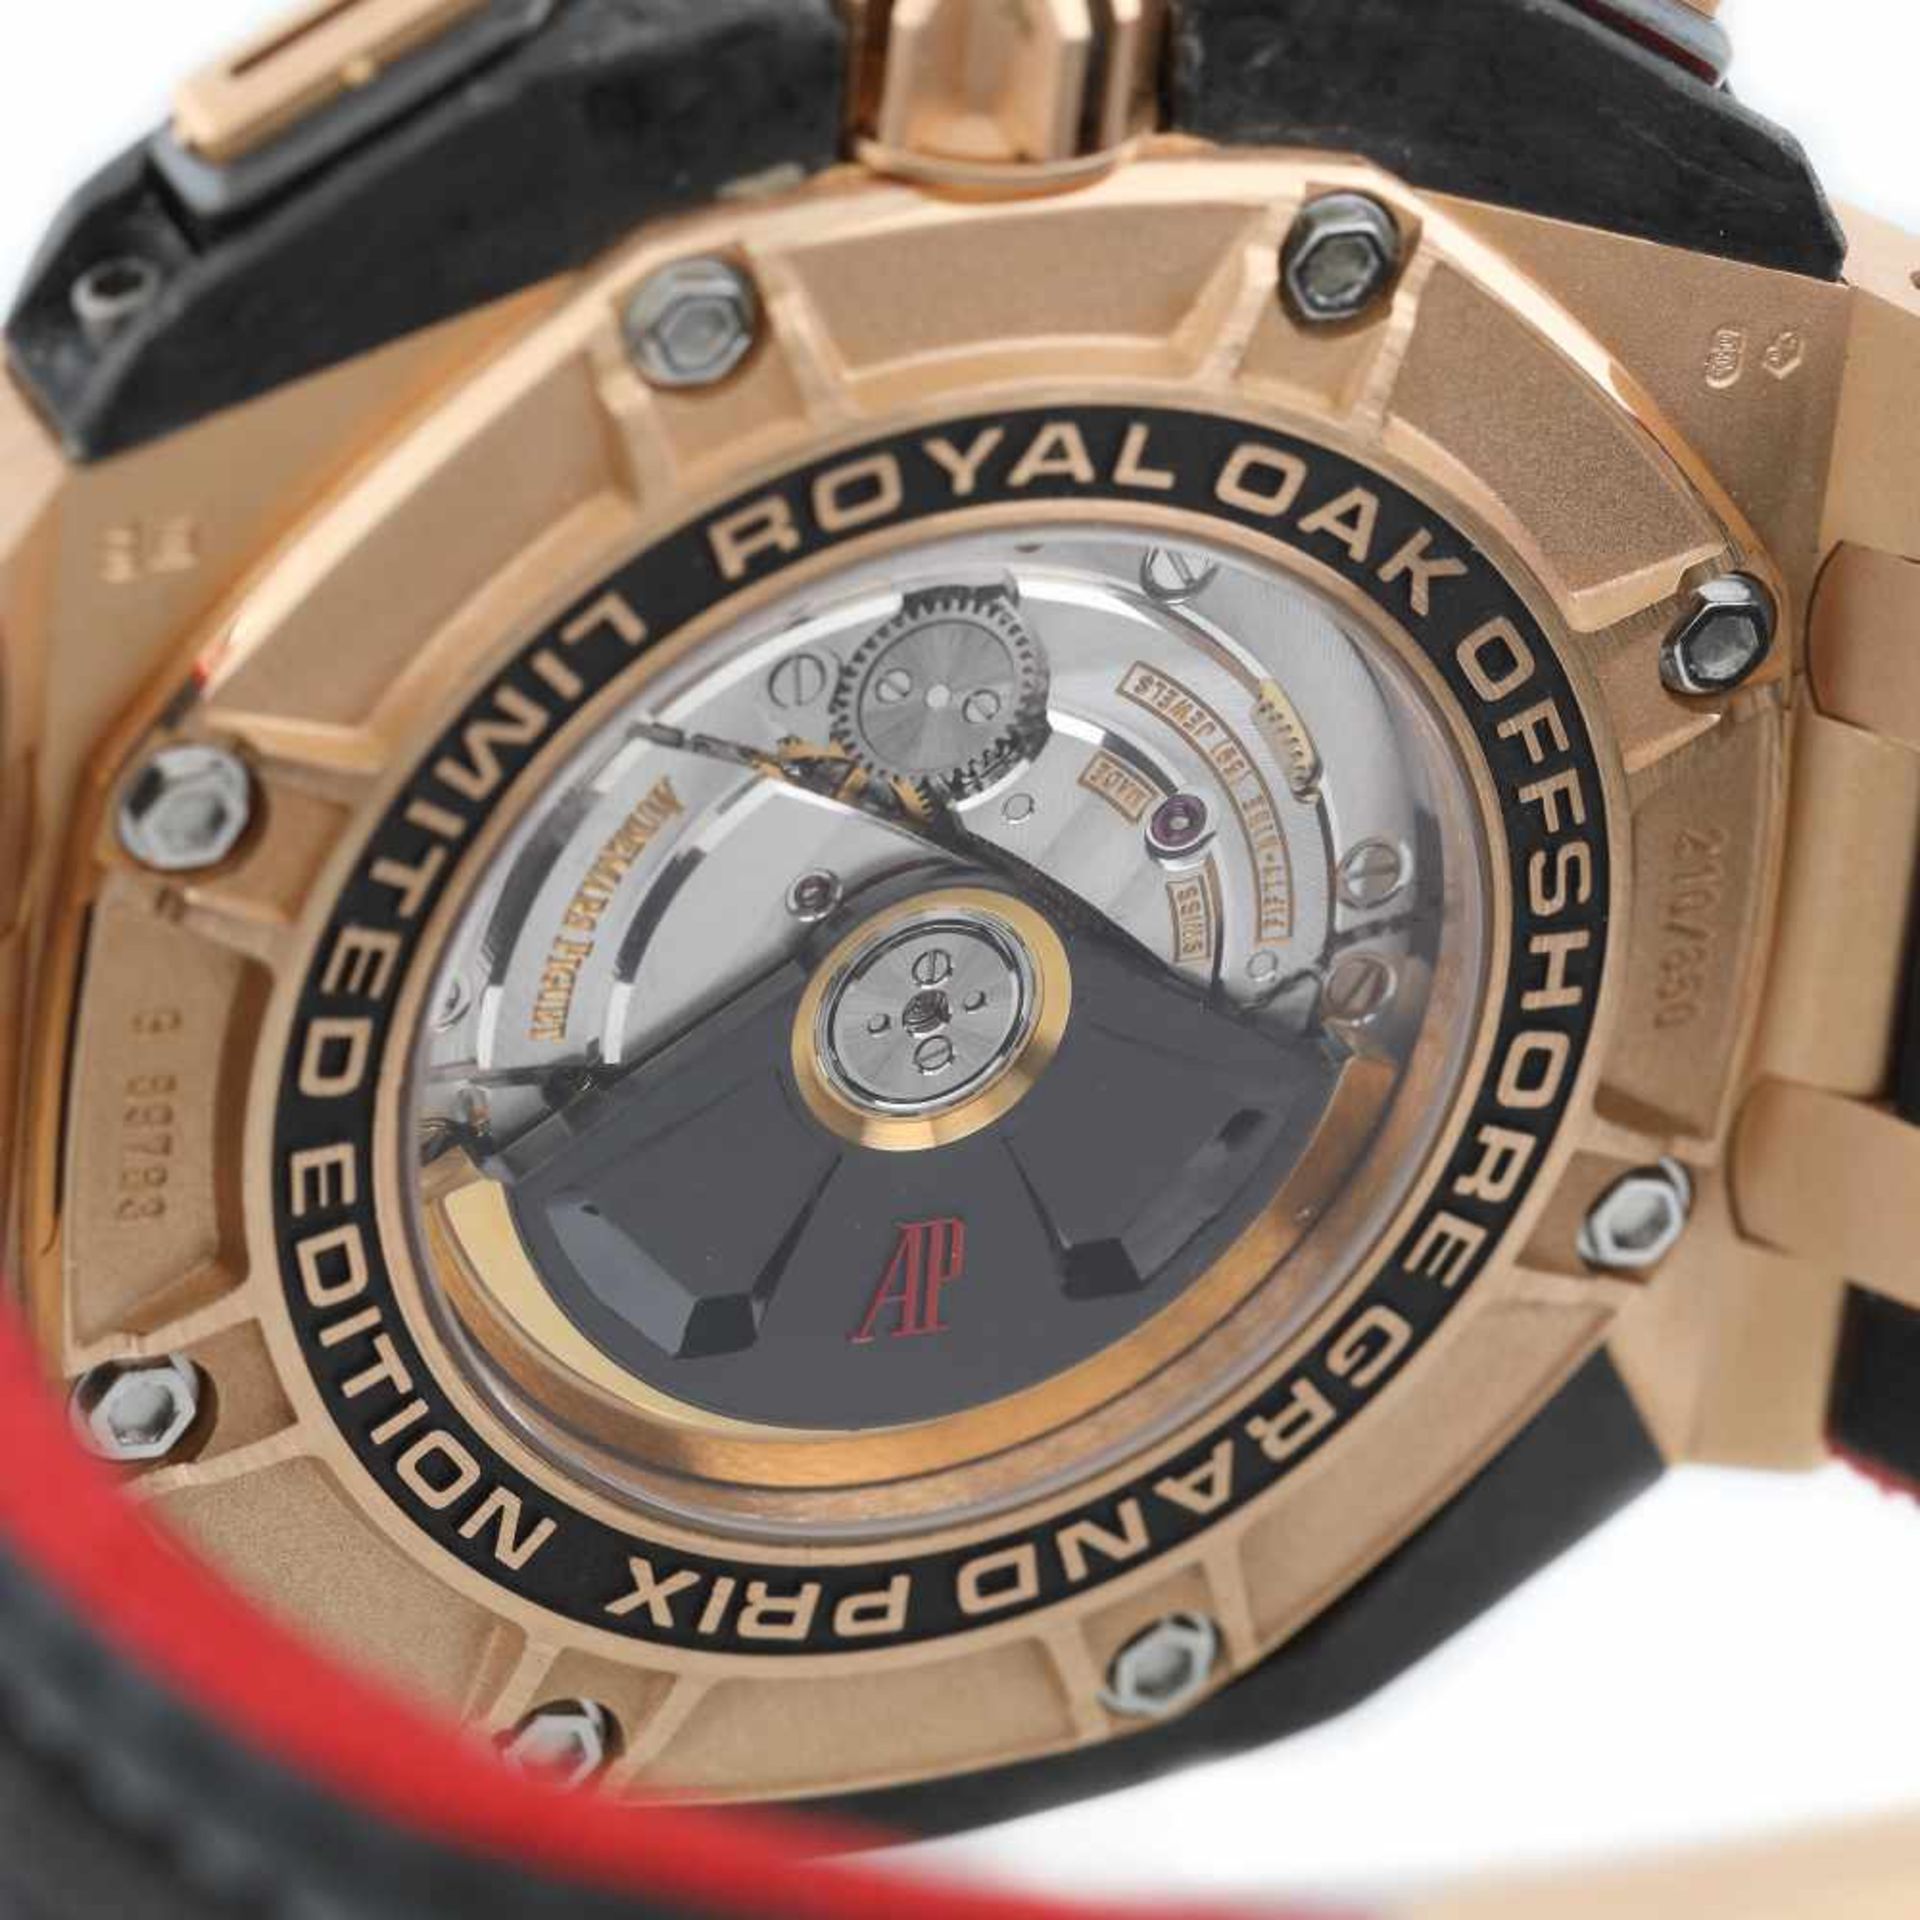 Audemars Piguet Royal Oak Offshore Grand Prix wristwatch, men, 210/650 - Image 4 of 4